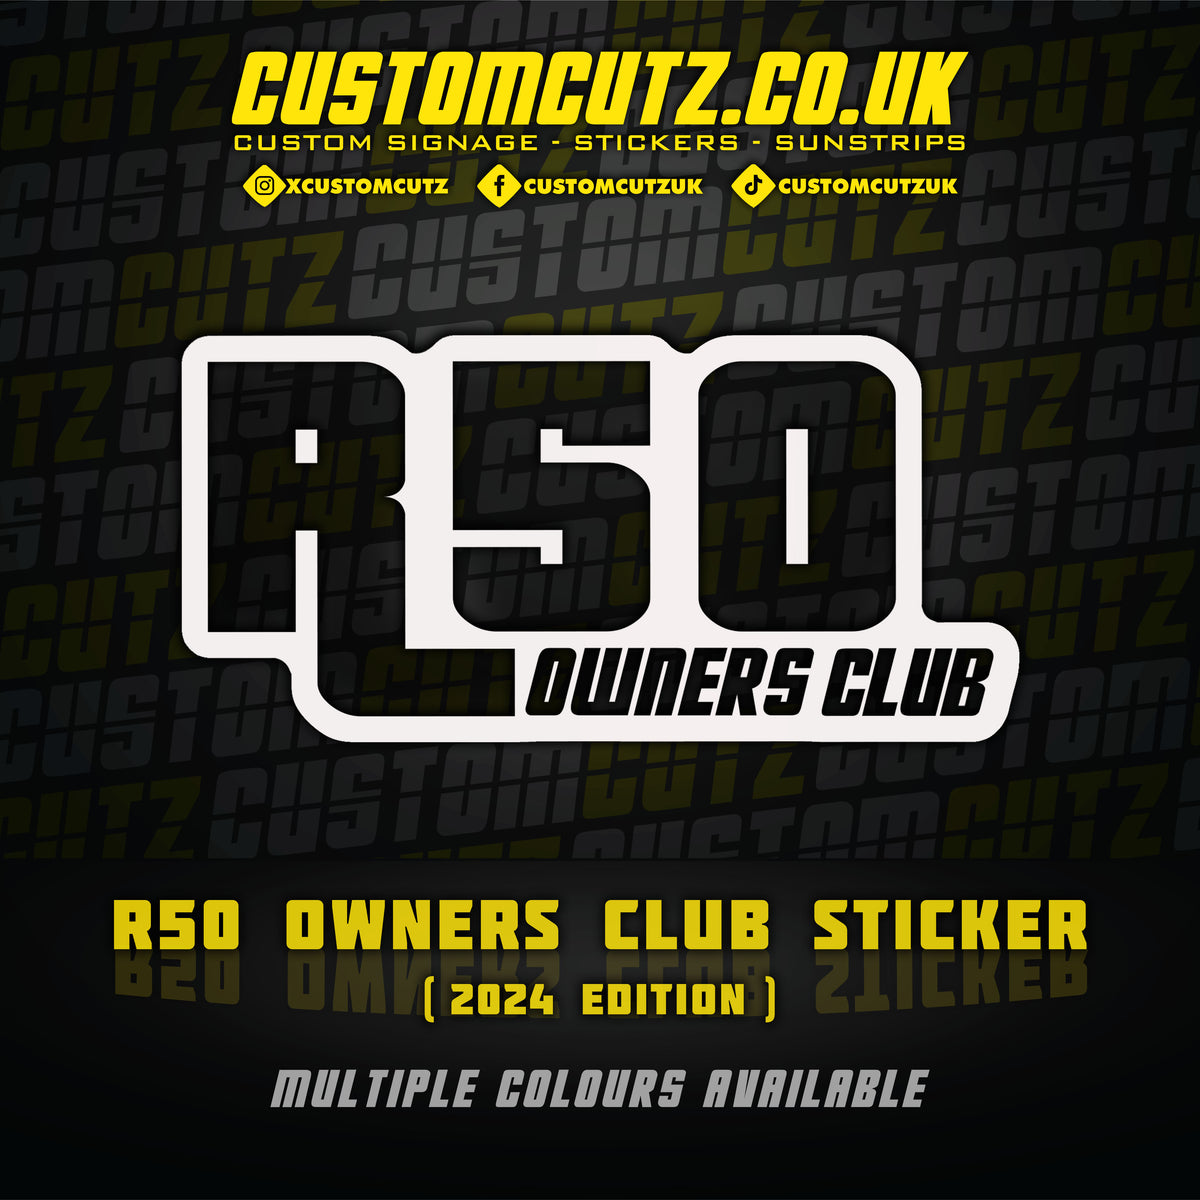 R50 Owners Club Sticker (2024 Edition)